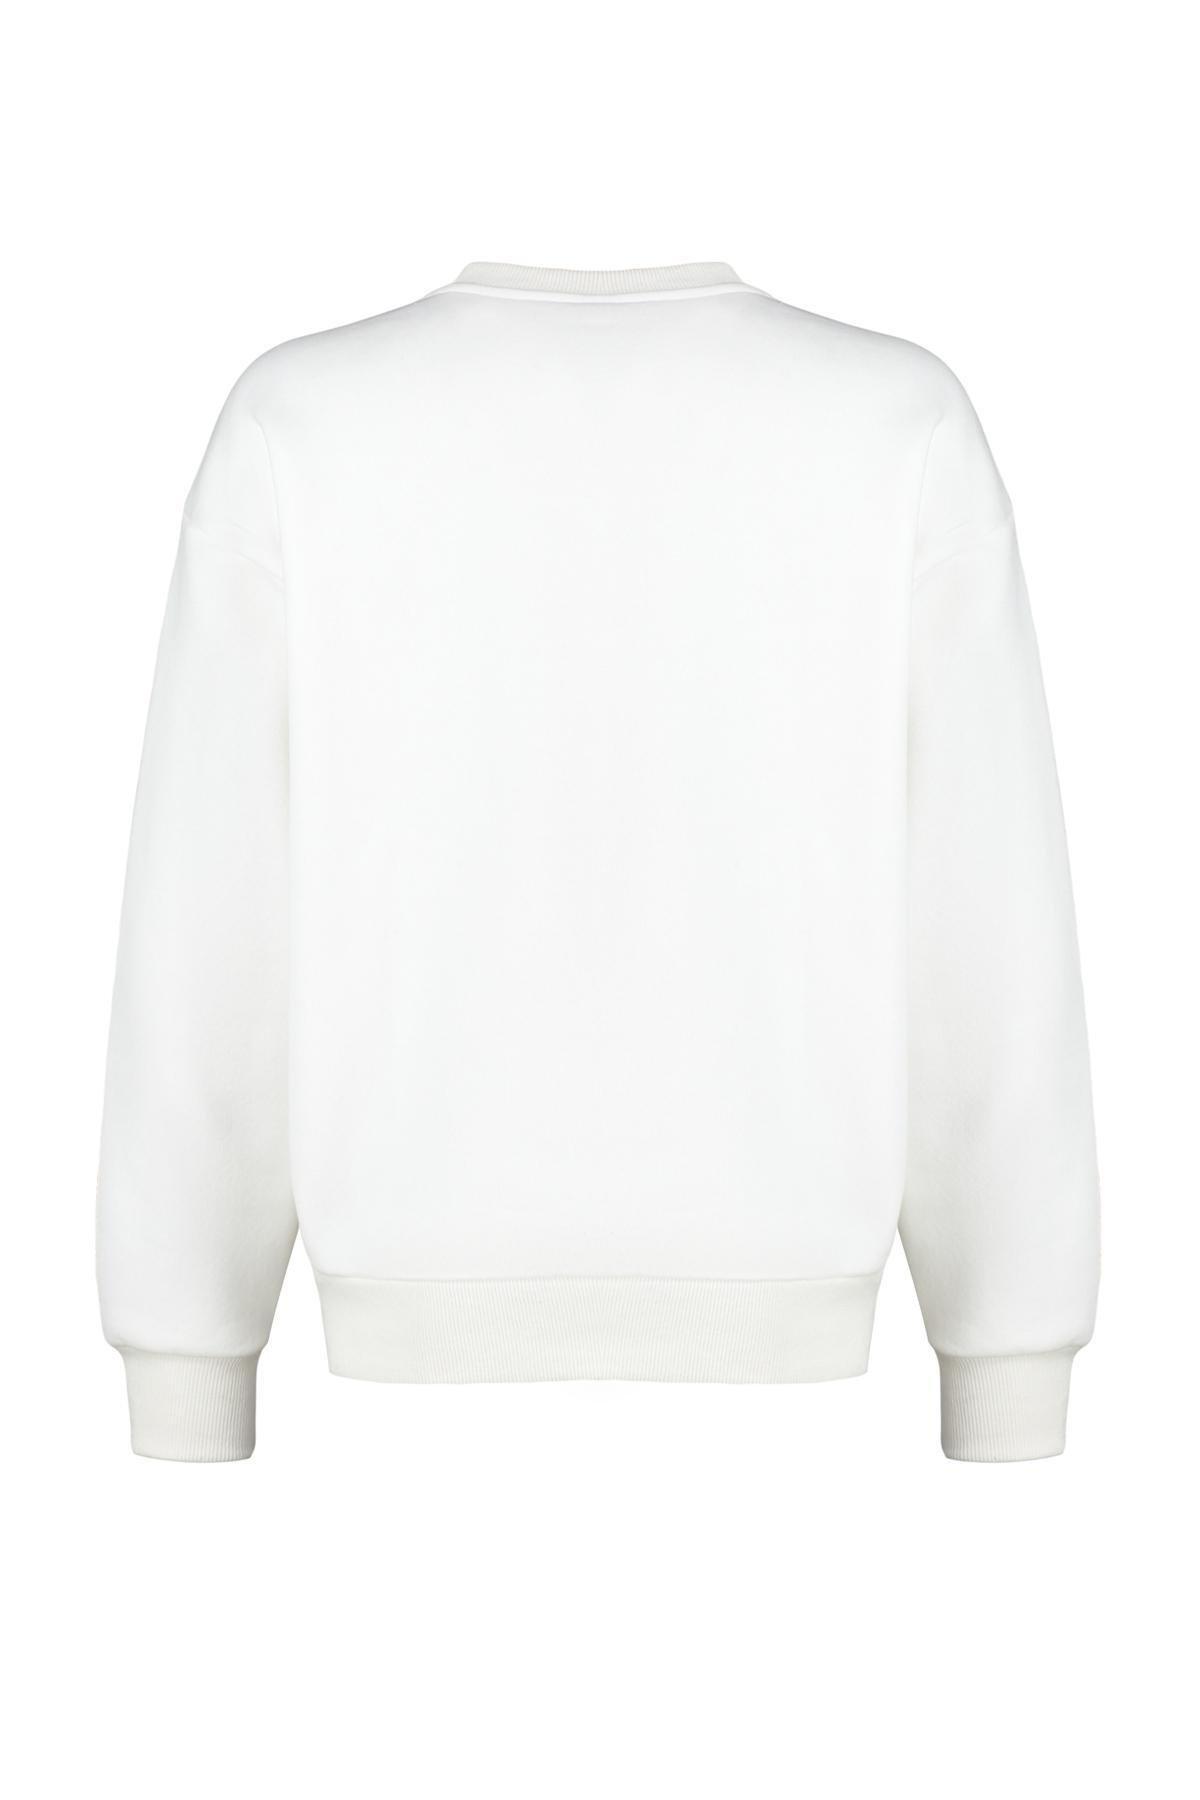 Trendyol - Cream Printed Knitted Sweatshirt